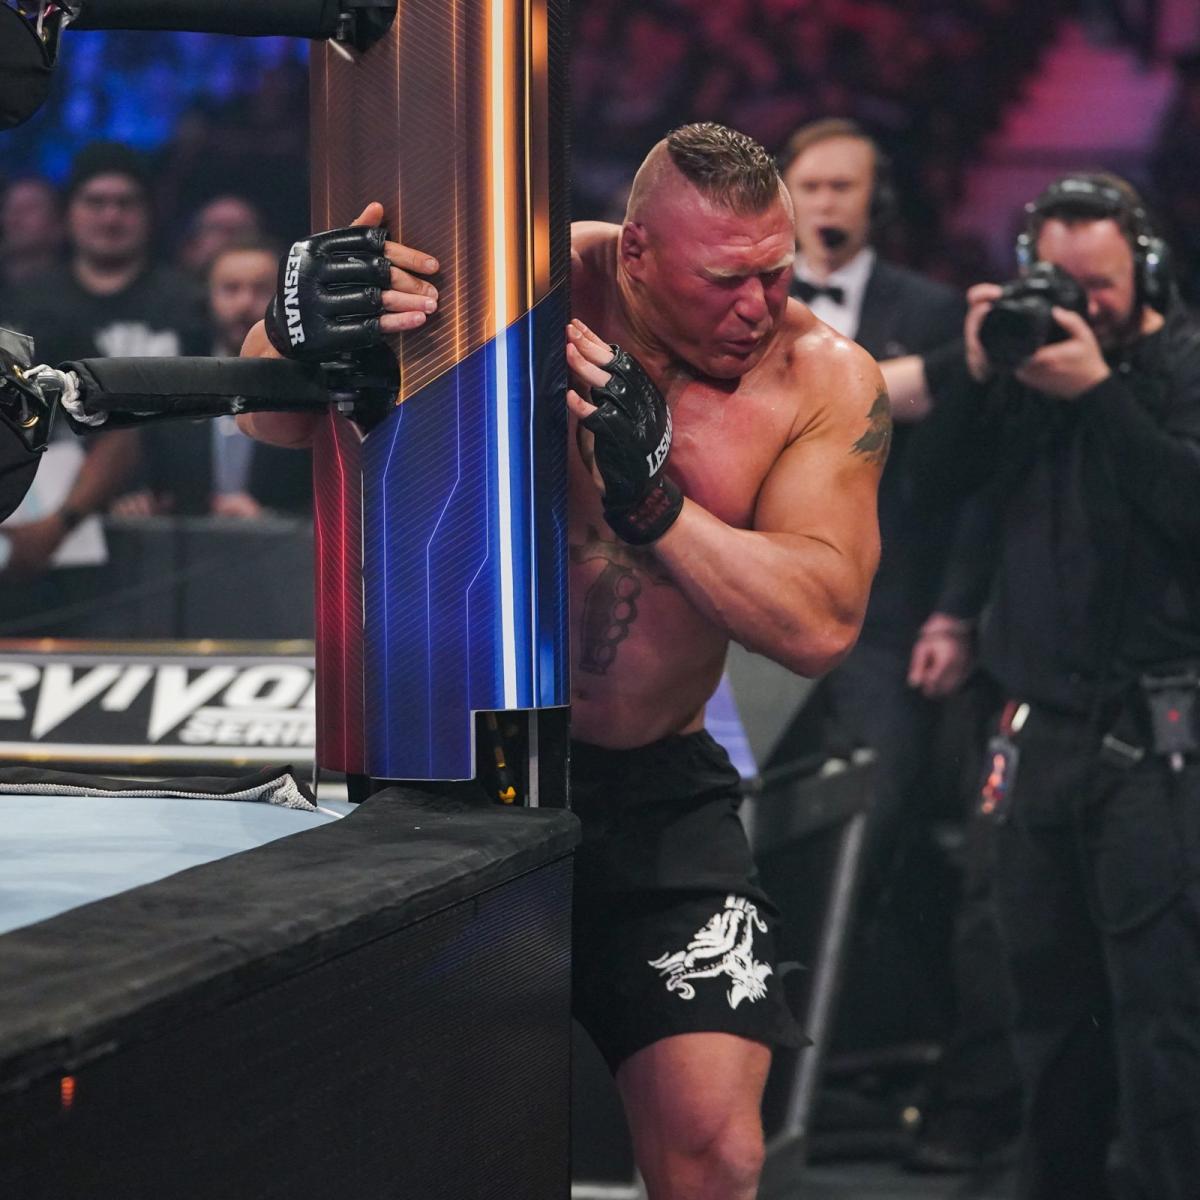 神秘人雷尔父子大战WWE冠军布洛克莱斯纳抓拍《幸存者大赛2019》